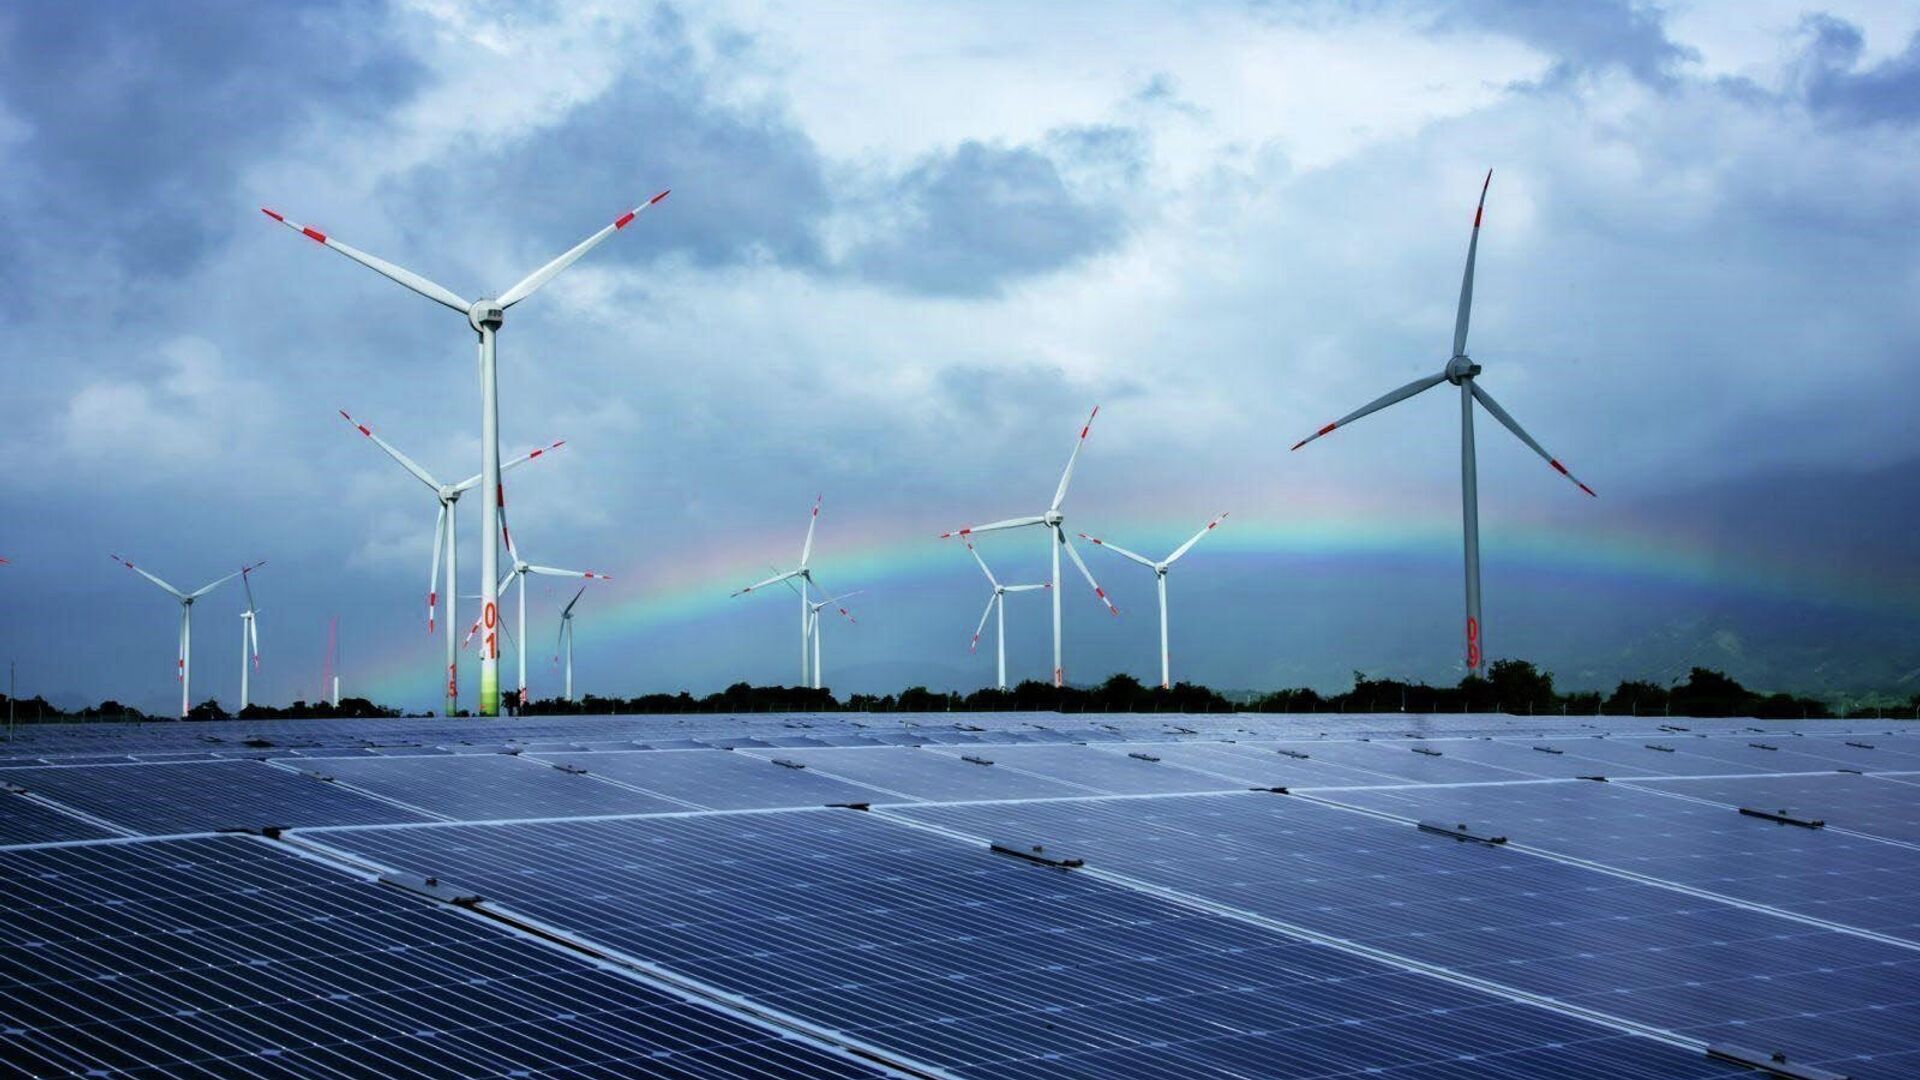 Từng bước thực hiện chủ trương xây dựng Ninh Thuận trở thành Trung tâm Năng lượng tái tạo của cả nước, đến nay, UBND tỉnh Ninh Thuận đã cấp quyết định chủ trương đầu tư cho 37 dự án điện mặt trời và 15 dự án điện gió với tổng công suất trên 3.342 MW - Sputnik Việt Nam, 1920, 08.02.2022